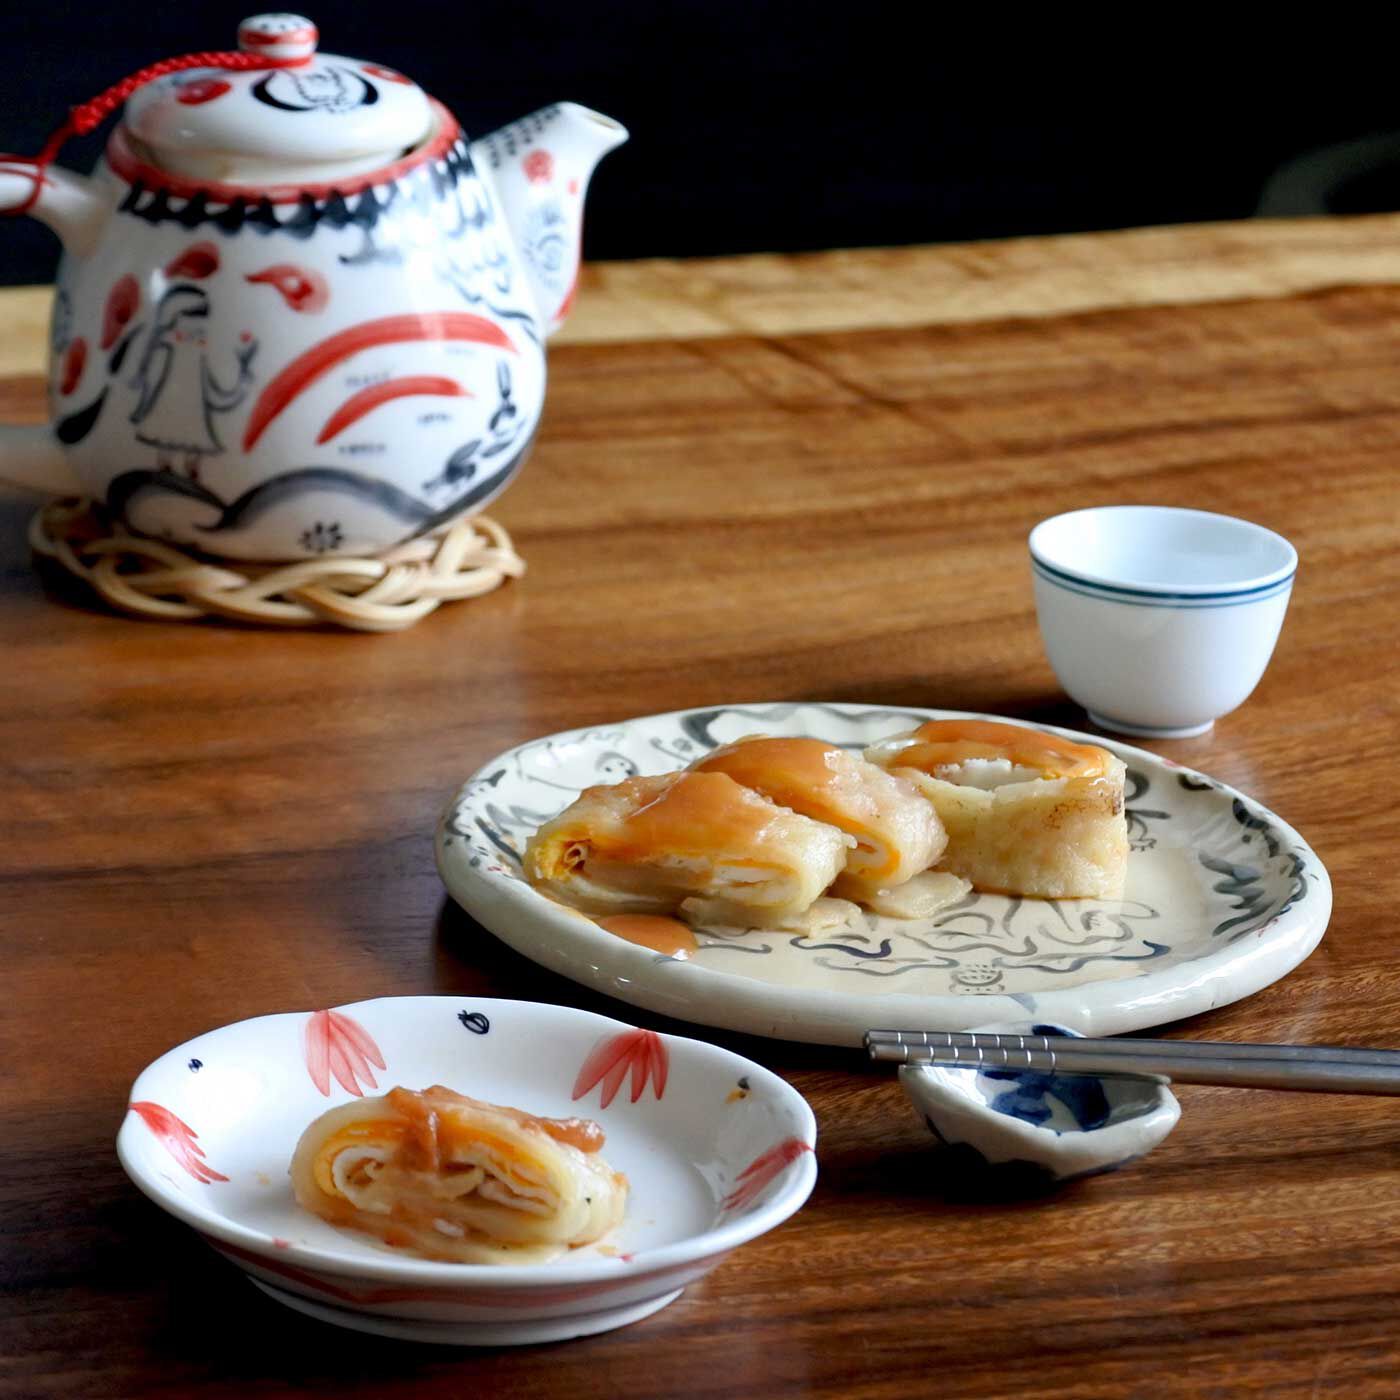 Natucul Chou Club(ナチュカル・シュークラブ)|小宇宙食堂リンシエさんの台湾の朝ごはん 蛋餅と海山醤ソース手づくりキット（2袋）|台湾の「朝ごはん屋」さんでよく食べられている蛋餅（だんぴん）をごく気軽におうちで再現できるように作ったミックス粉とソースのキットです。